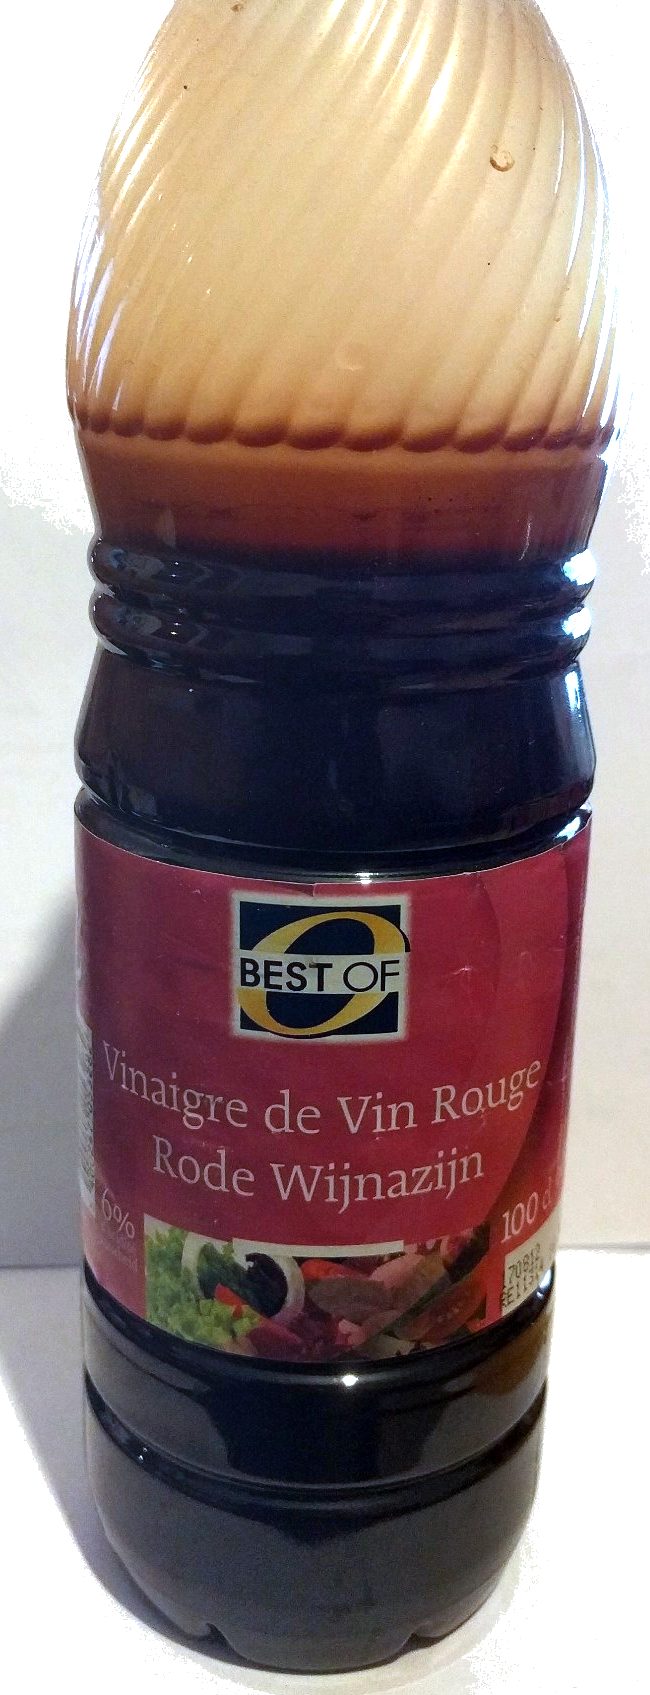 Vinaigre de vin rouge - Product - fr